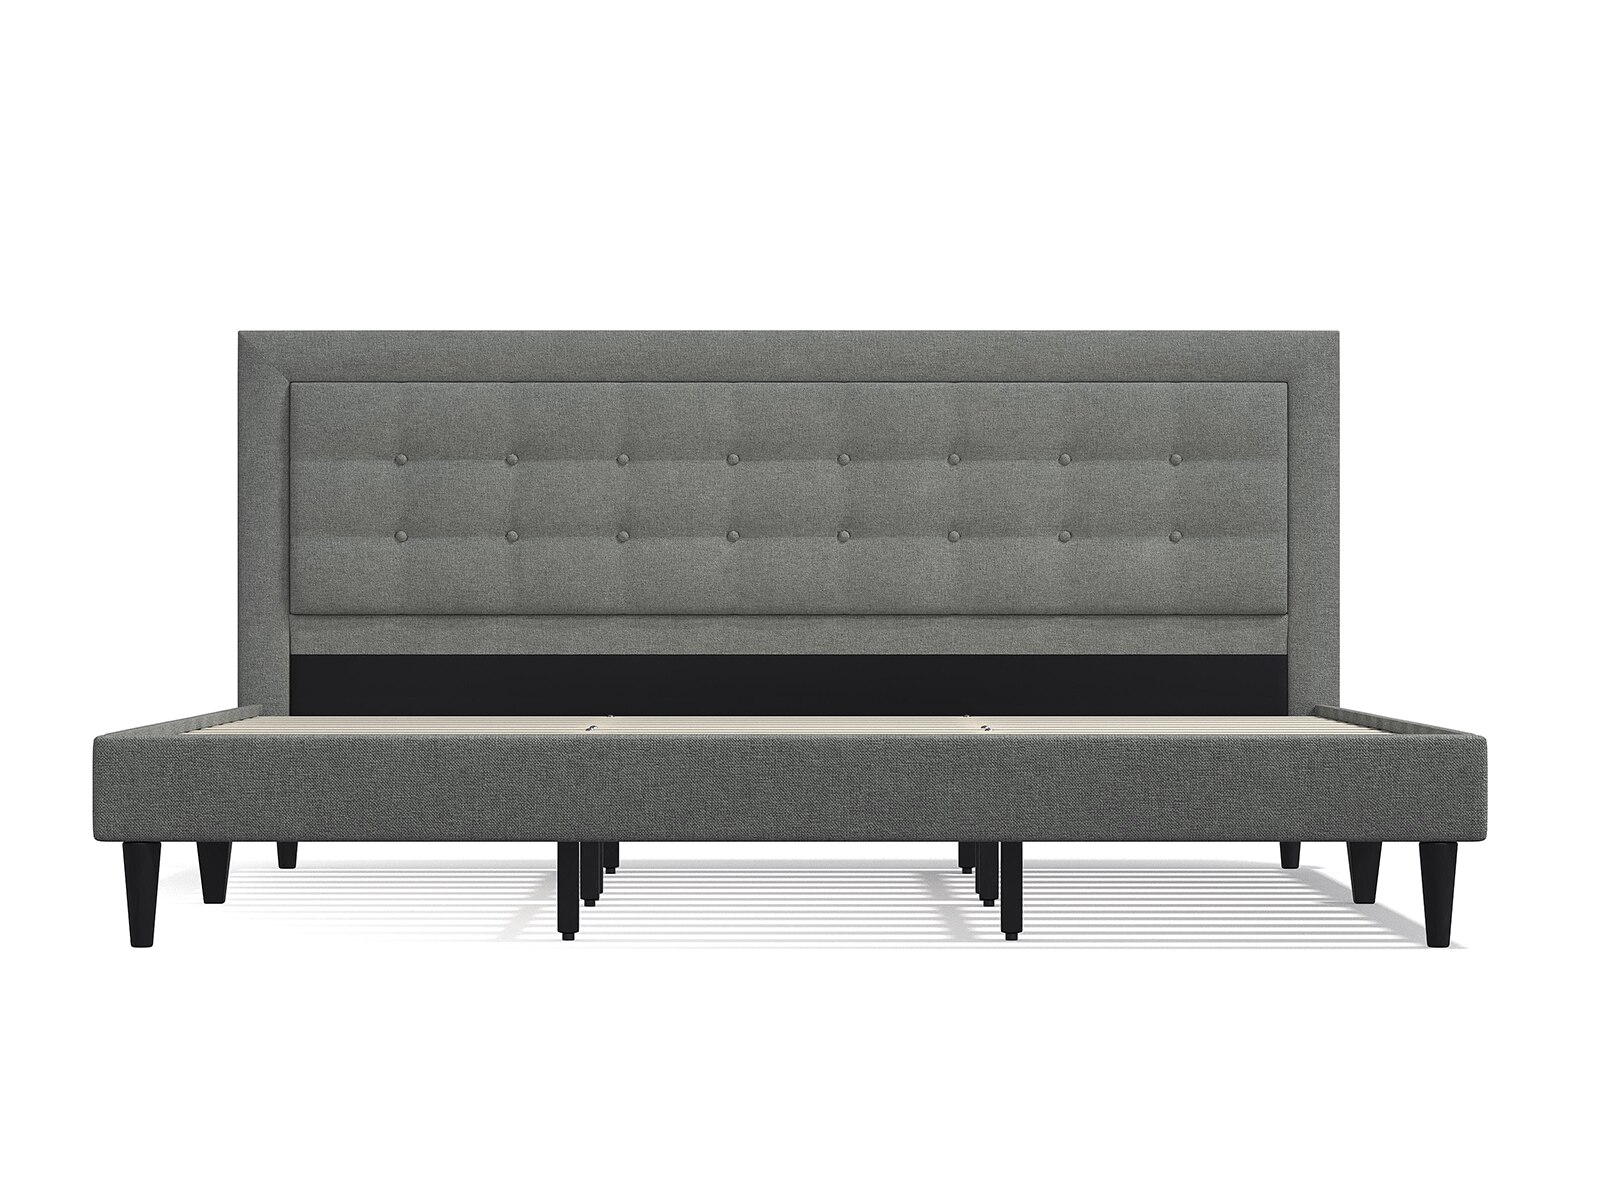 Conner Upholstered Platform Bed Frame